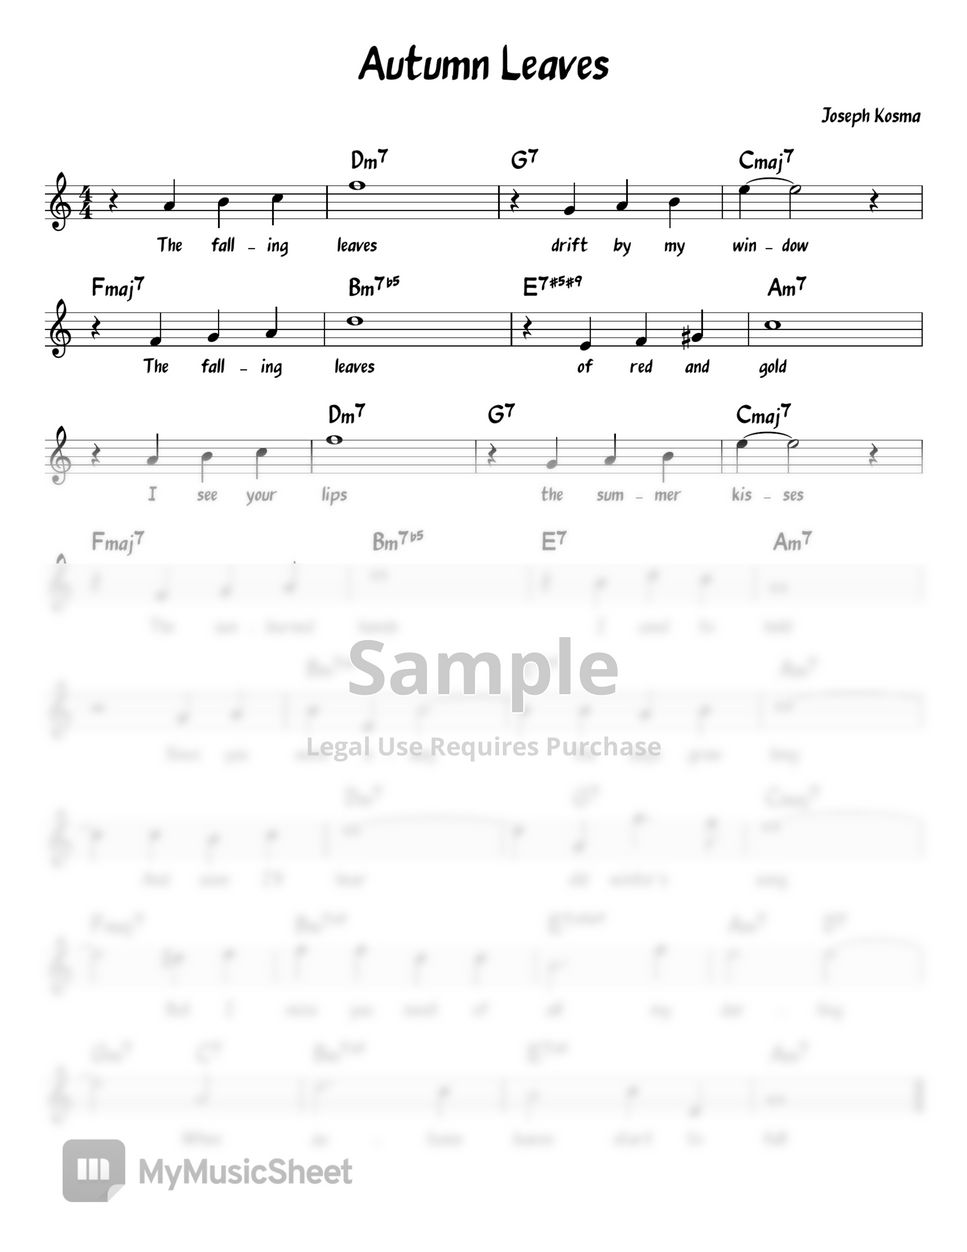 Joseph Kosma - Autumn Leaves in C (Chord/Melody/Lyrics) (Lead Sheet) by ukulelewenwen